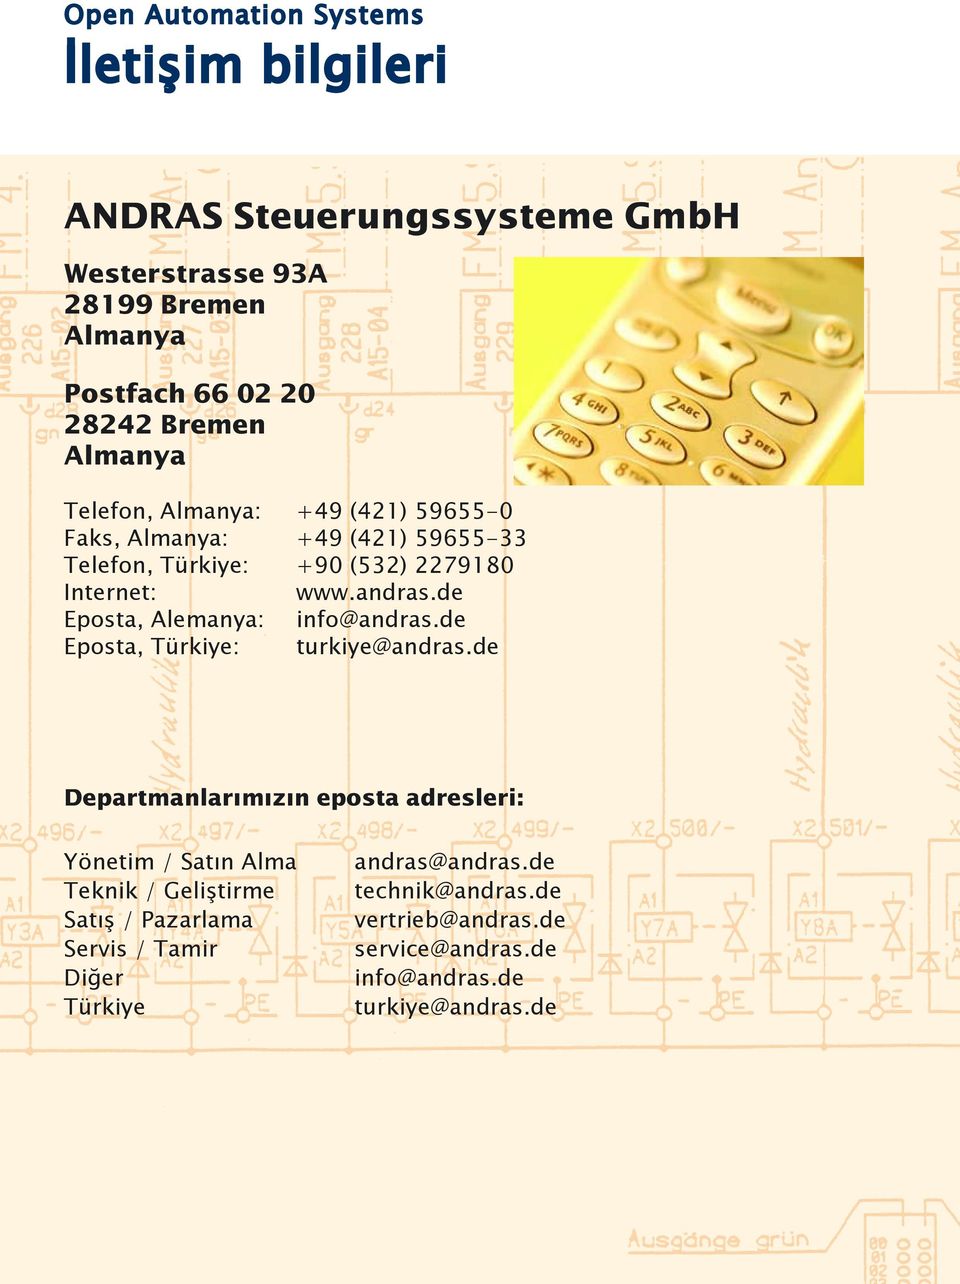 de Eposta, Alemanya: info@andras.de Eposta, Türkiye: turkiye@andras.